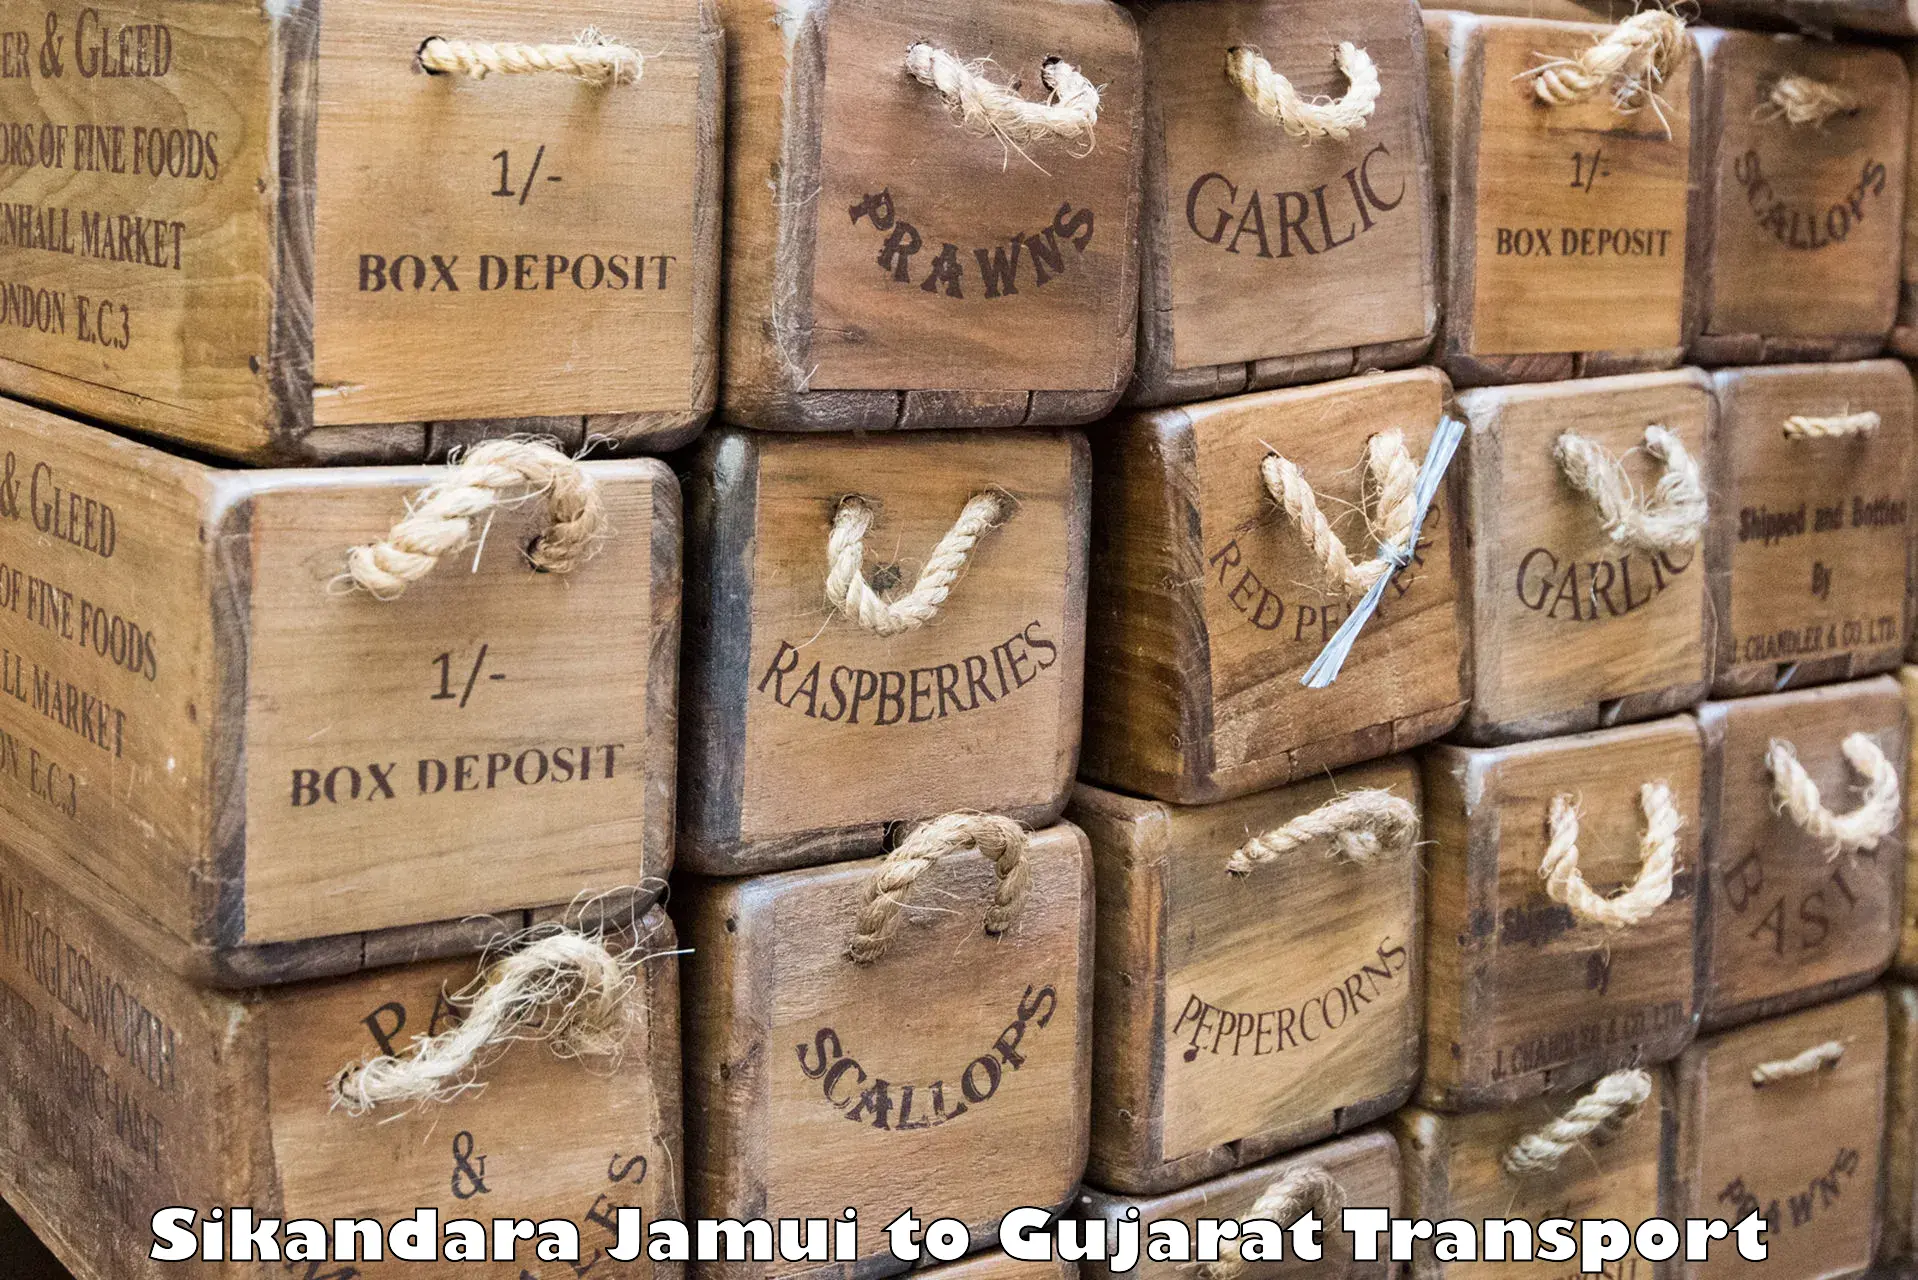 Daily parcel service transport Sikandara Jamui to Jamnagar